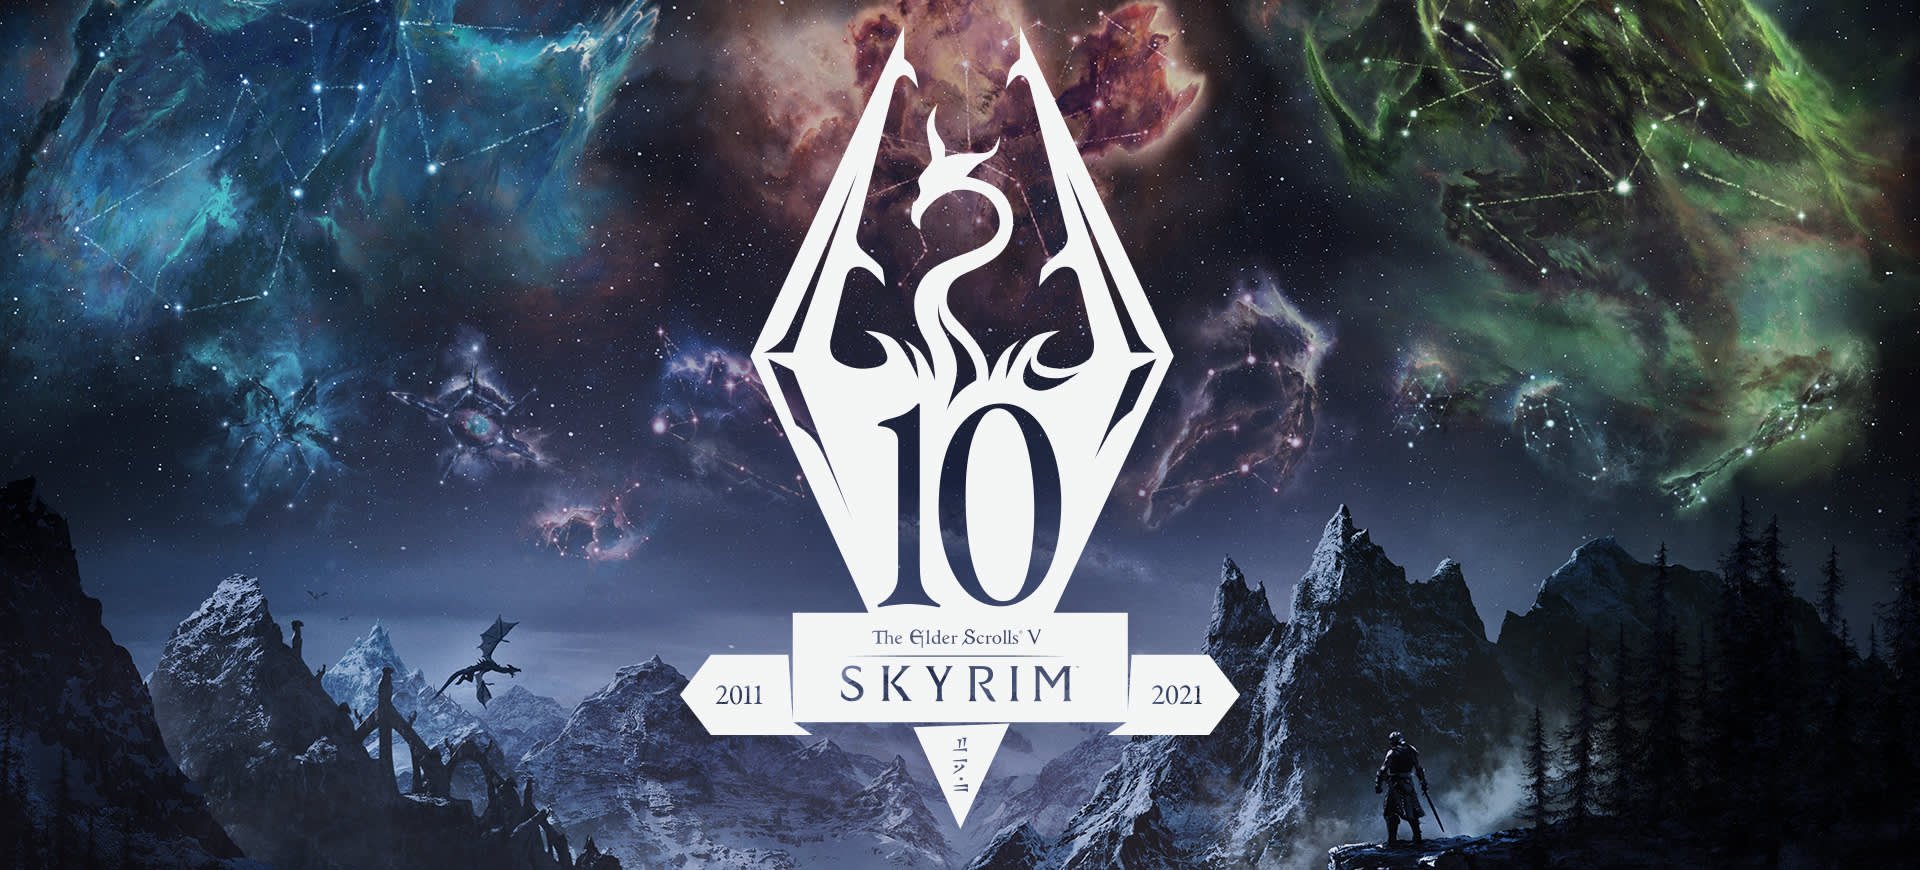 Edição de aniversário de Skyrim chega em novembro